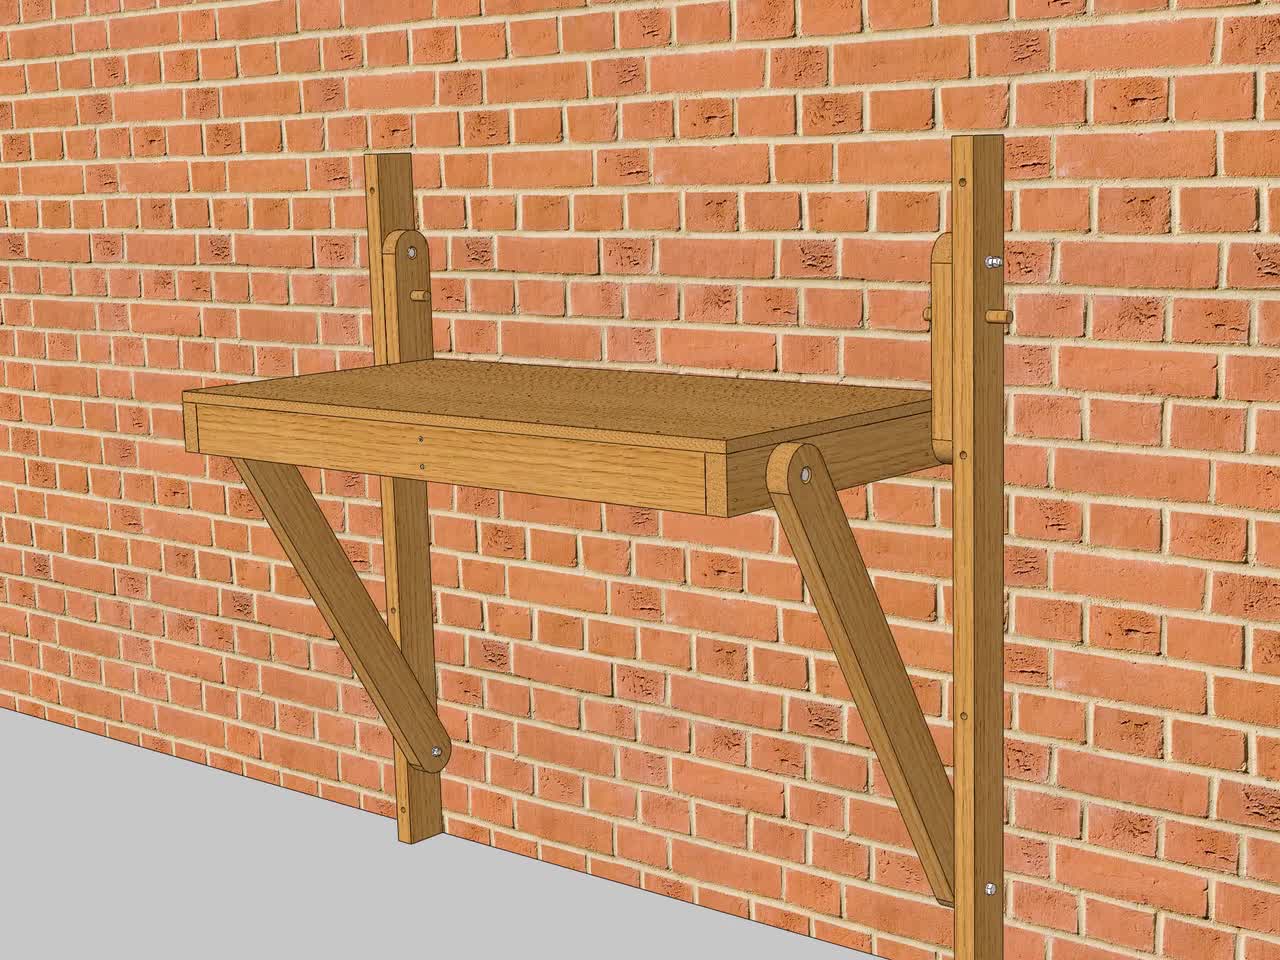 Empleador Madison armario Planos de carpintería mesa plegable de madera 4 x 2 mesa - Etsy México